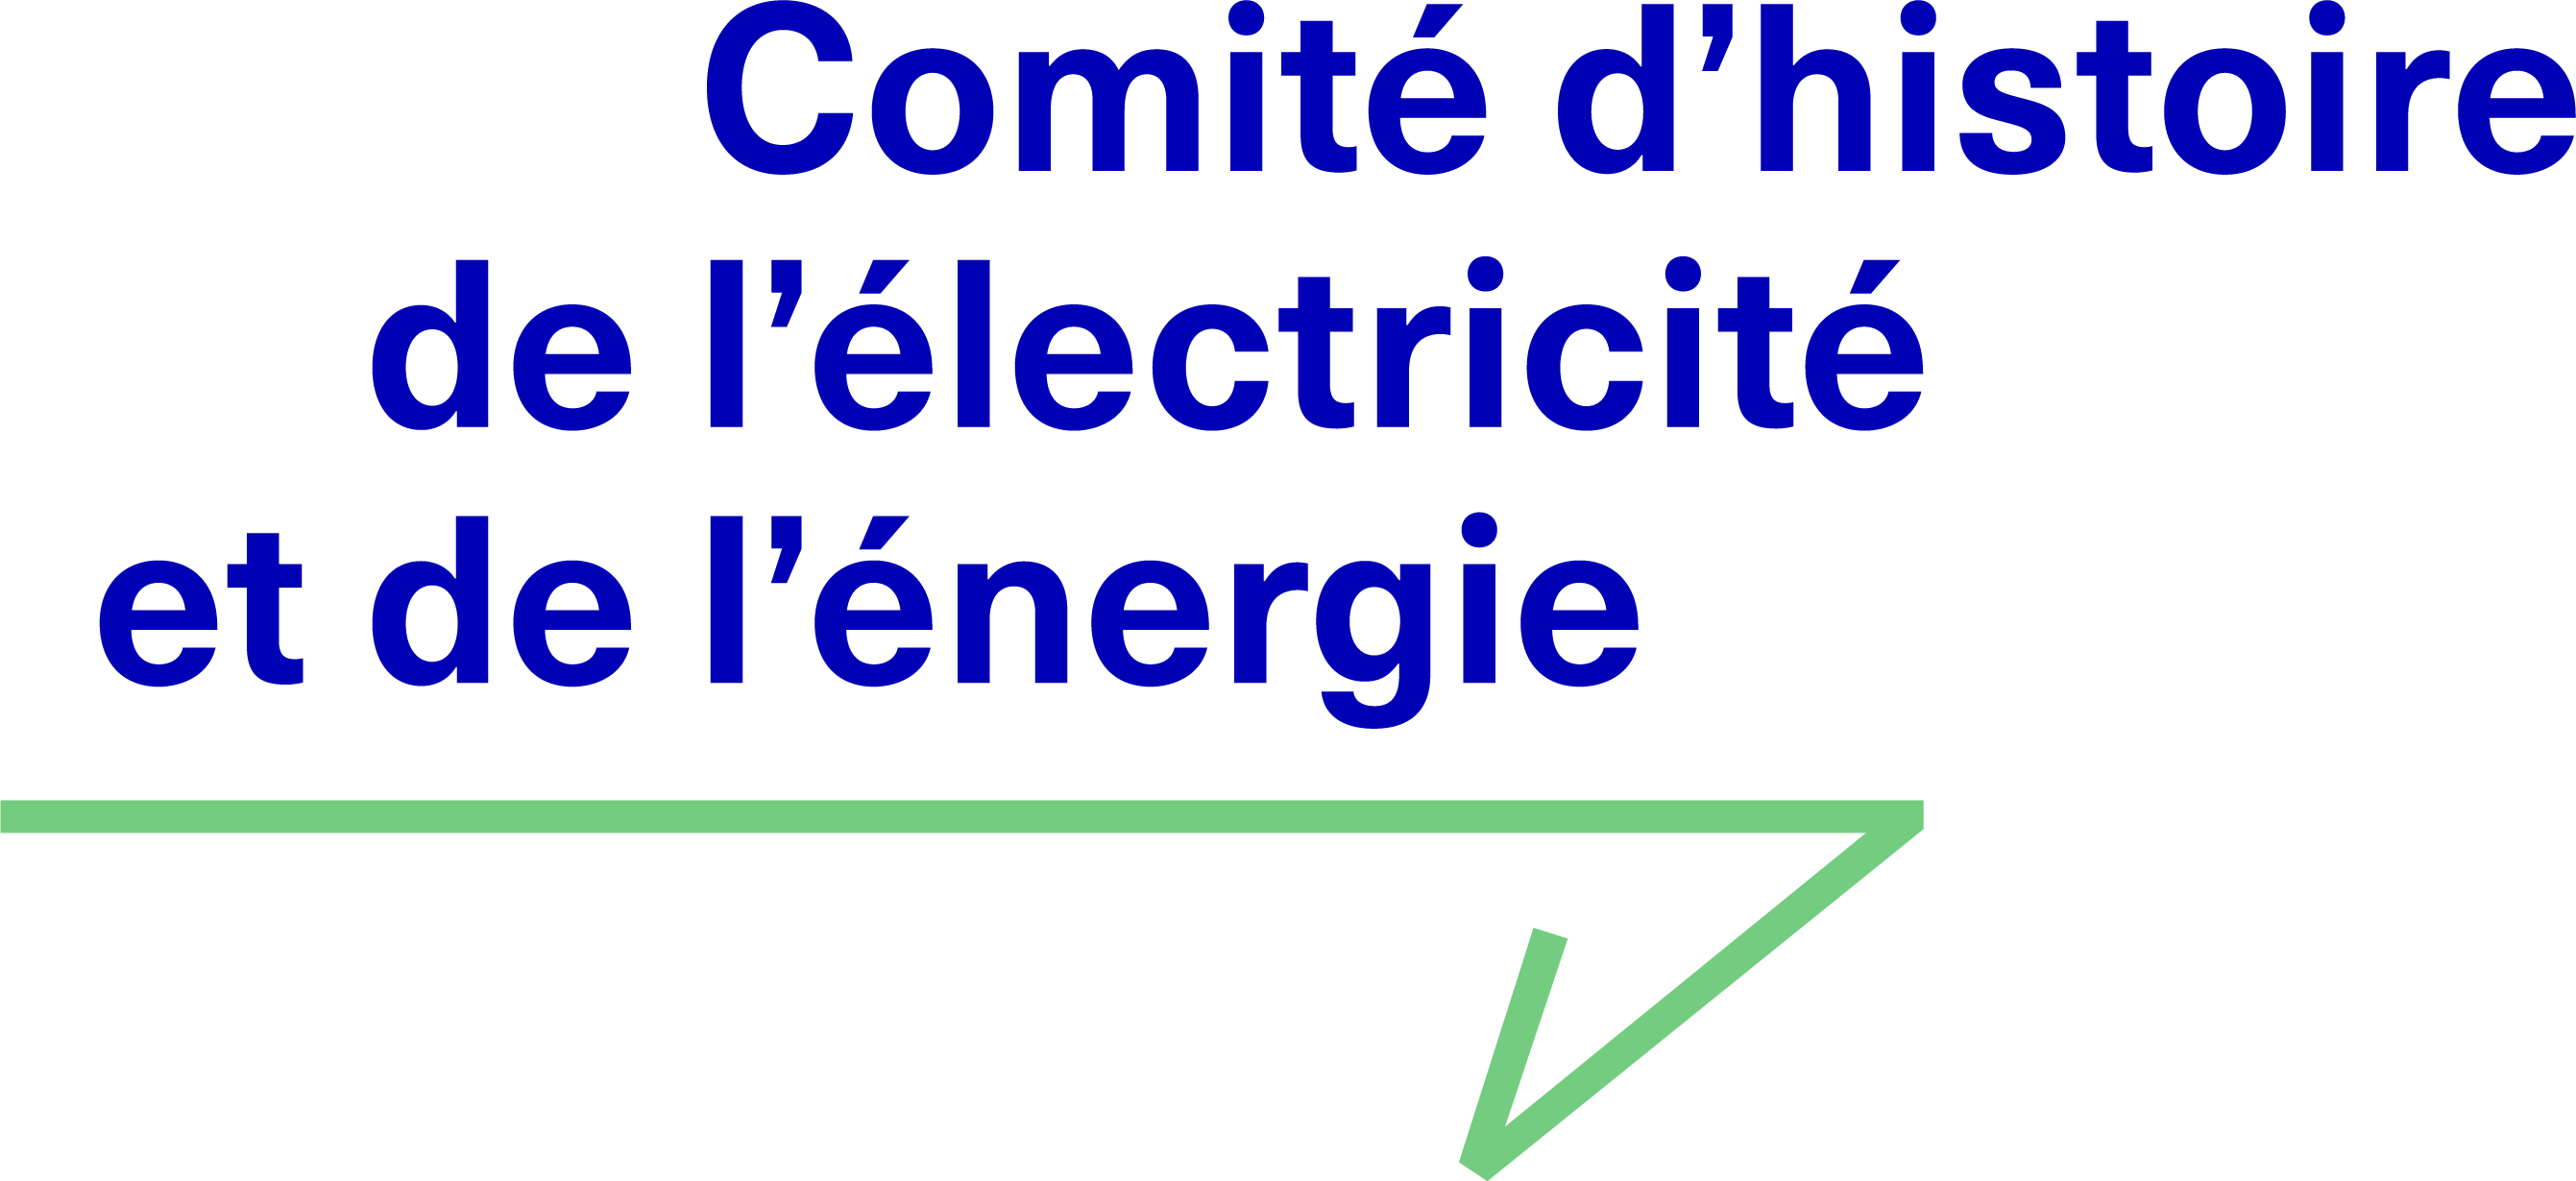 Comité d'histoire de l'électricité et de l'énergie - Fondation EDF